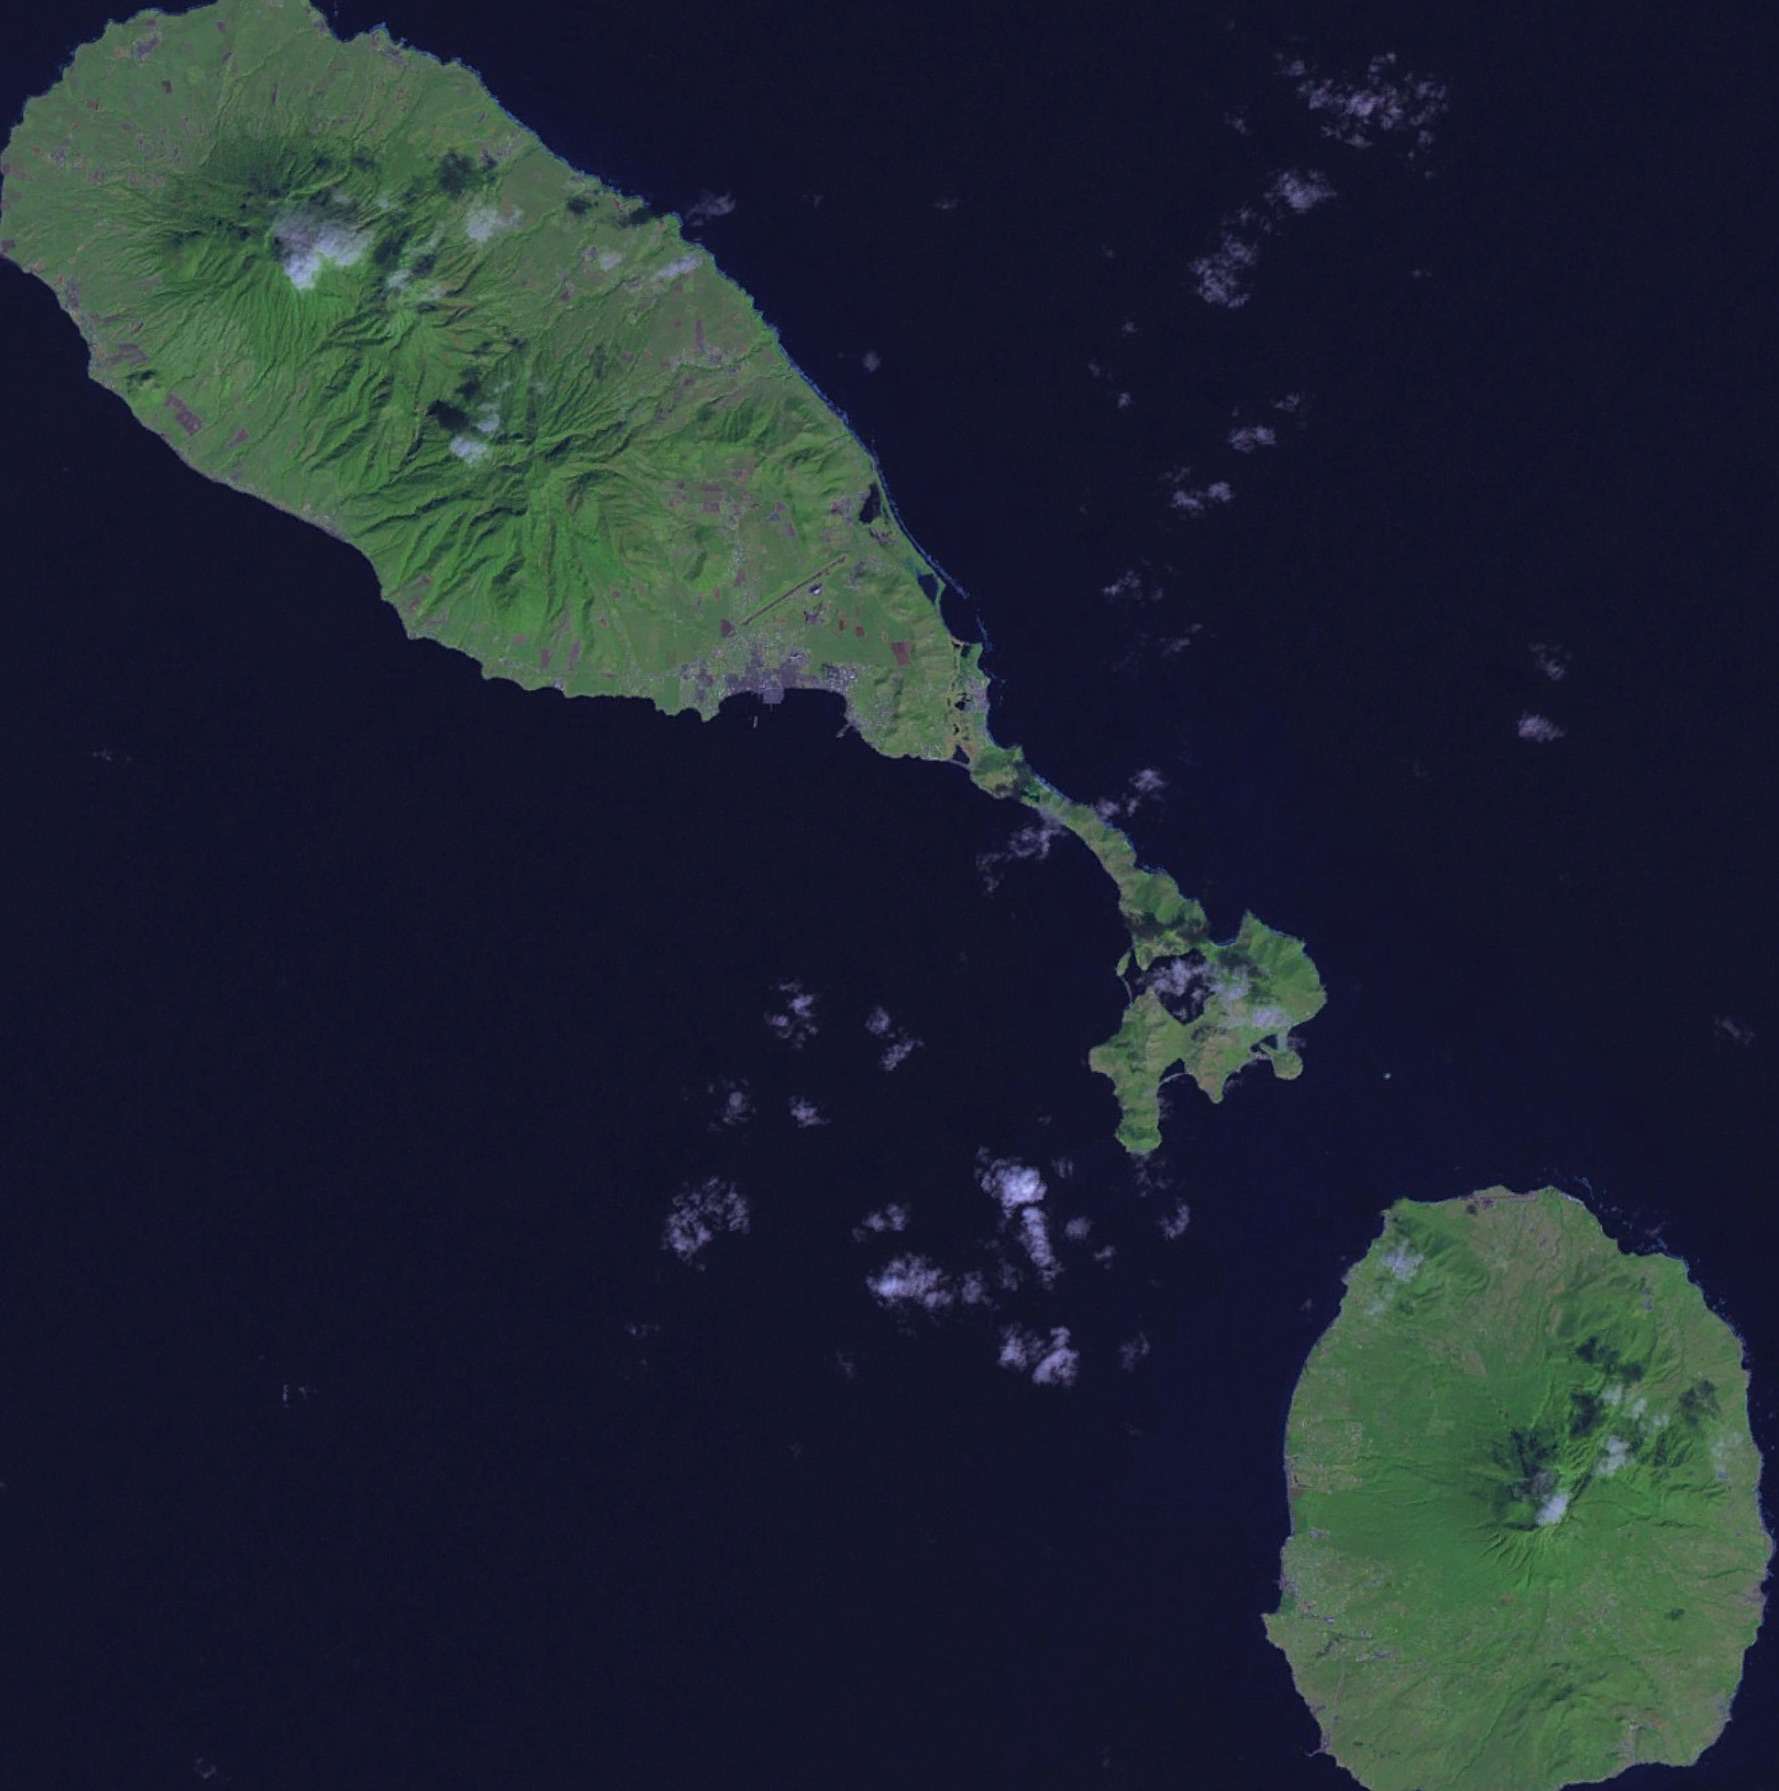 Vista aérea de las islas San Cristóbal y Nieves, con forma de bate y pelota